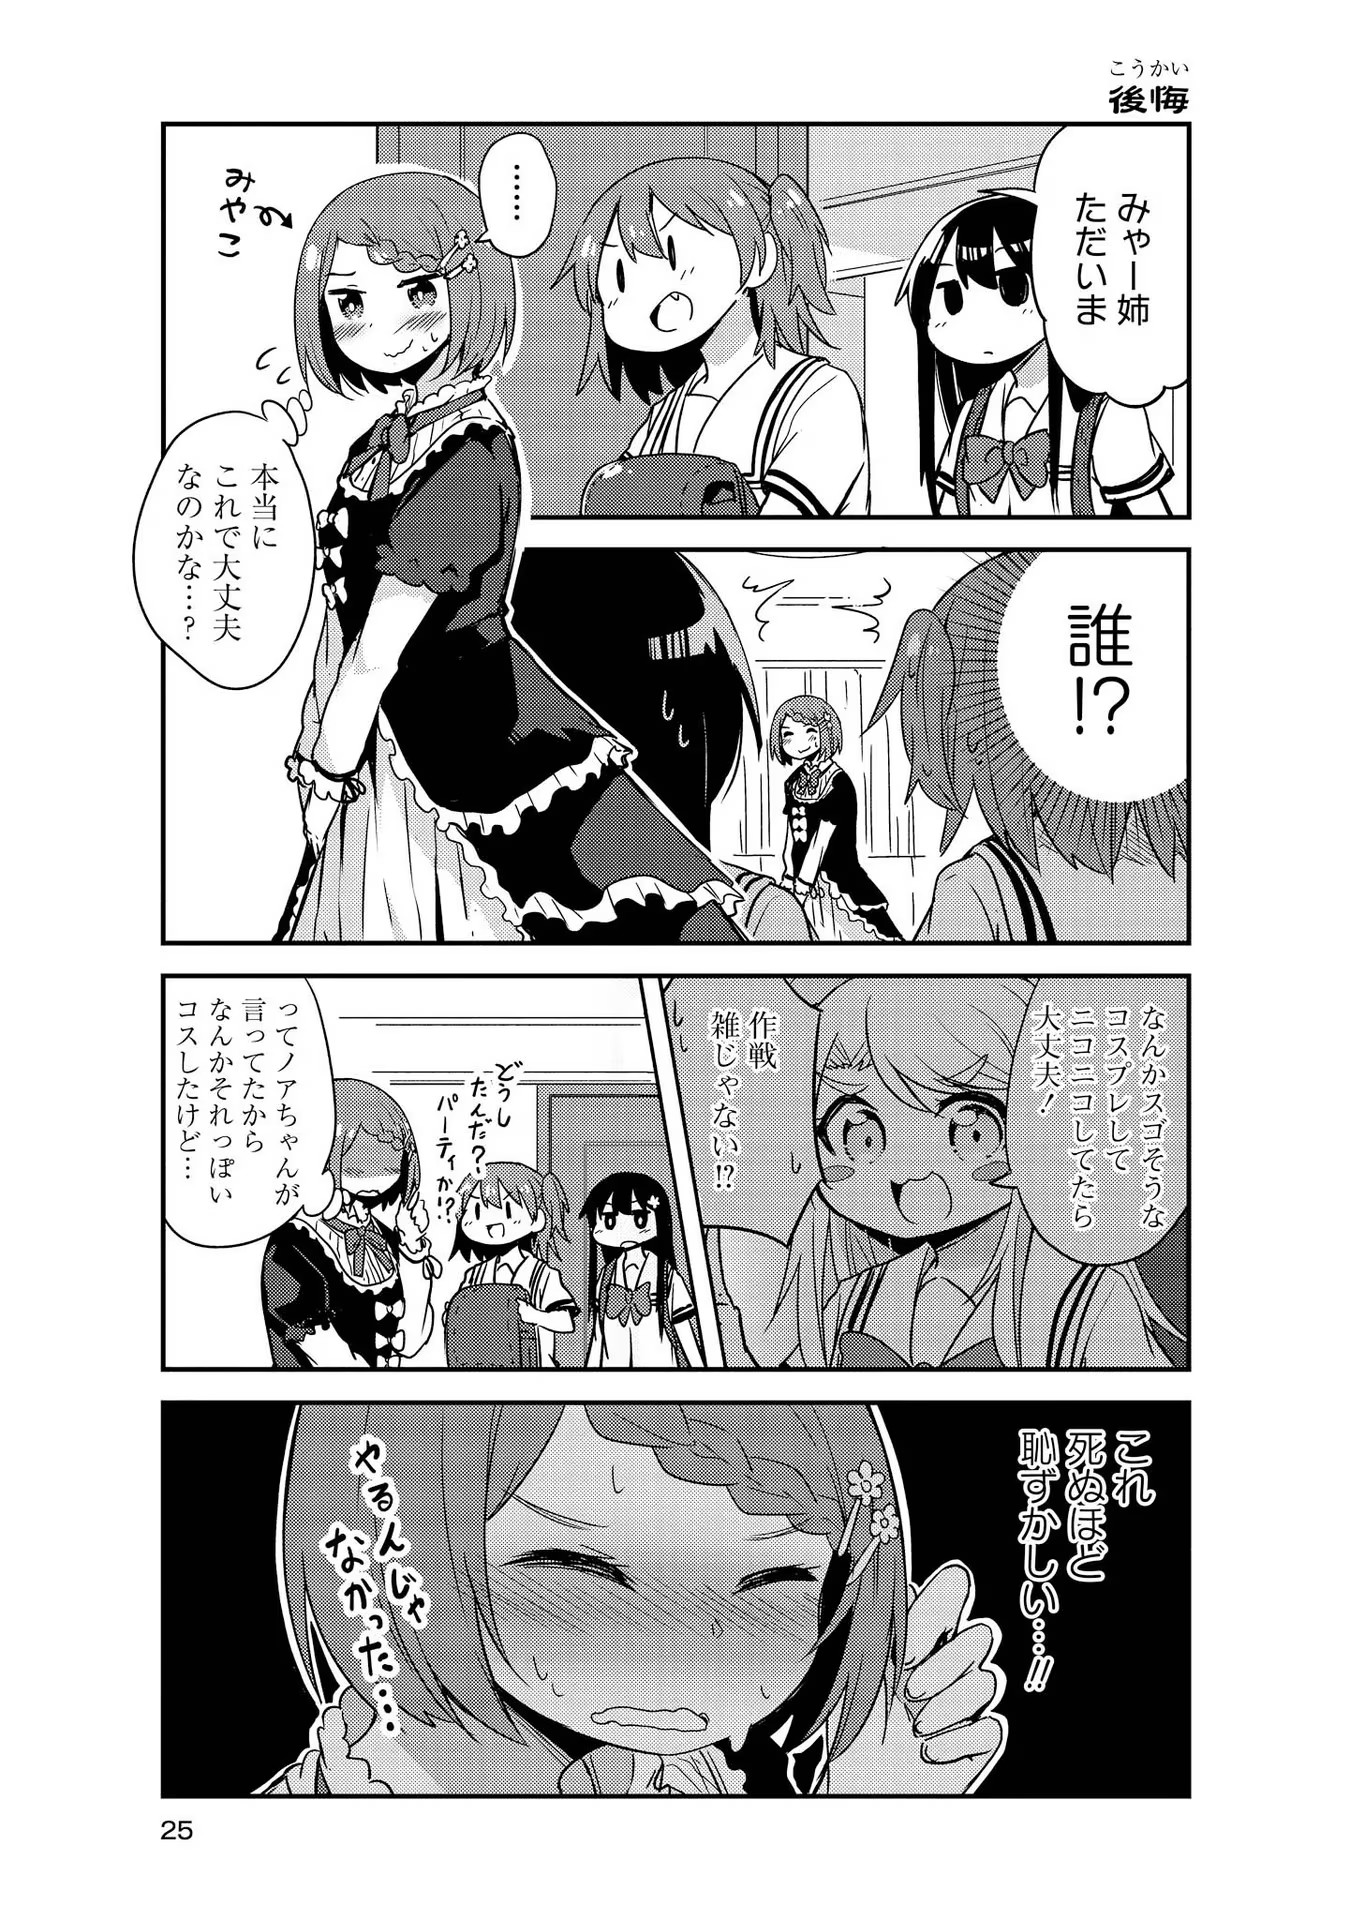 Watashi ni Tenshi ga Maiorita! - Chapter 22 - Page 5